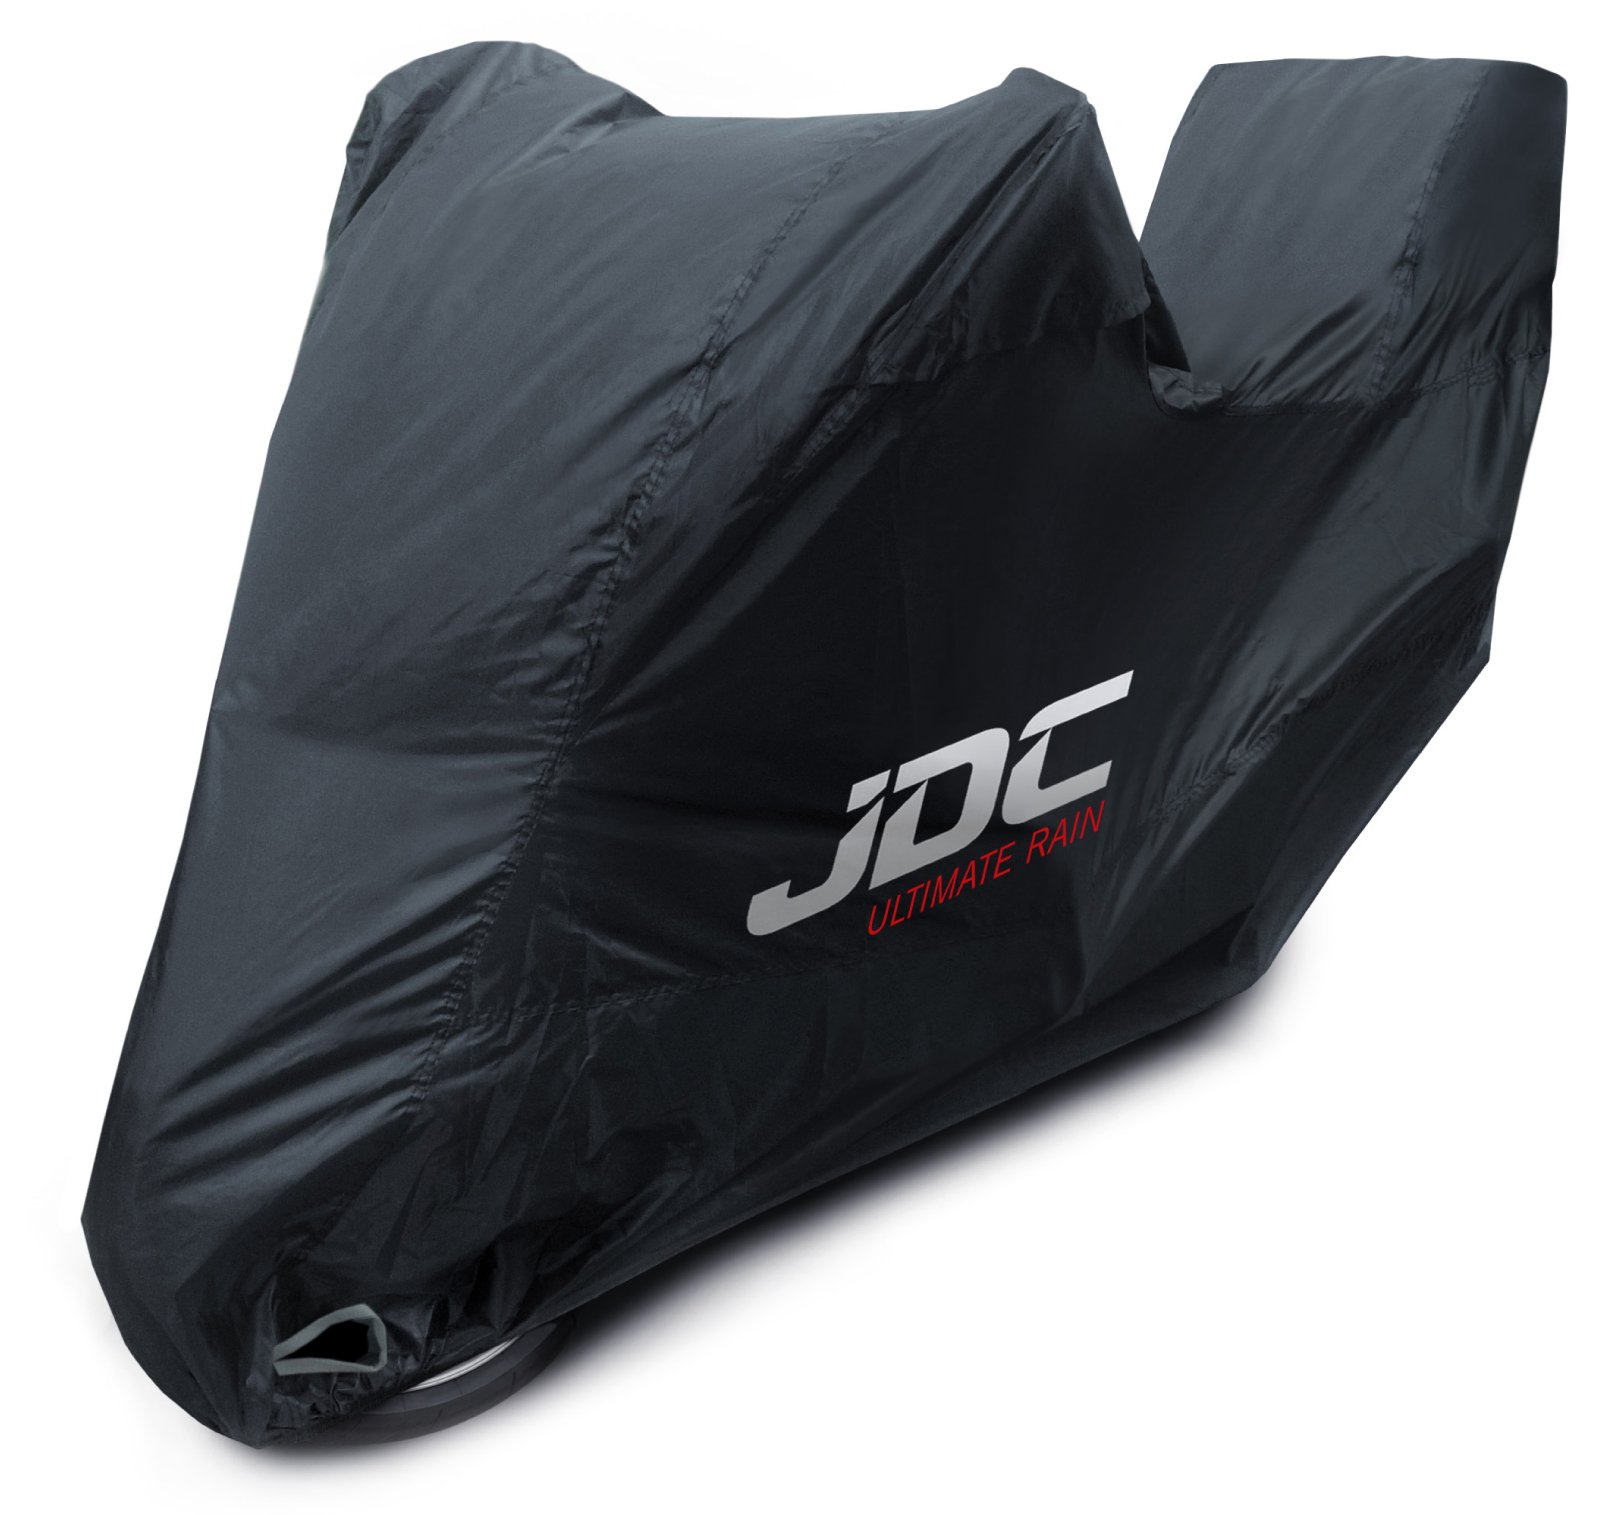 JDC 100% wasserdichte Motorradabdeckung – Ultimate RAIN (Strapazierfähig, weiches Futter, hitzebeständig, verschweißte Nähte) - S Top-Box von JDC